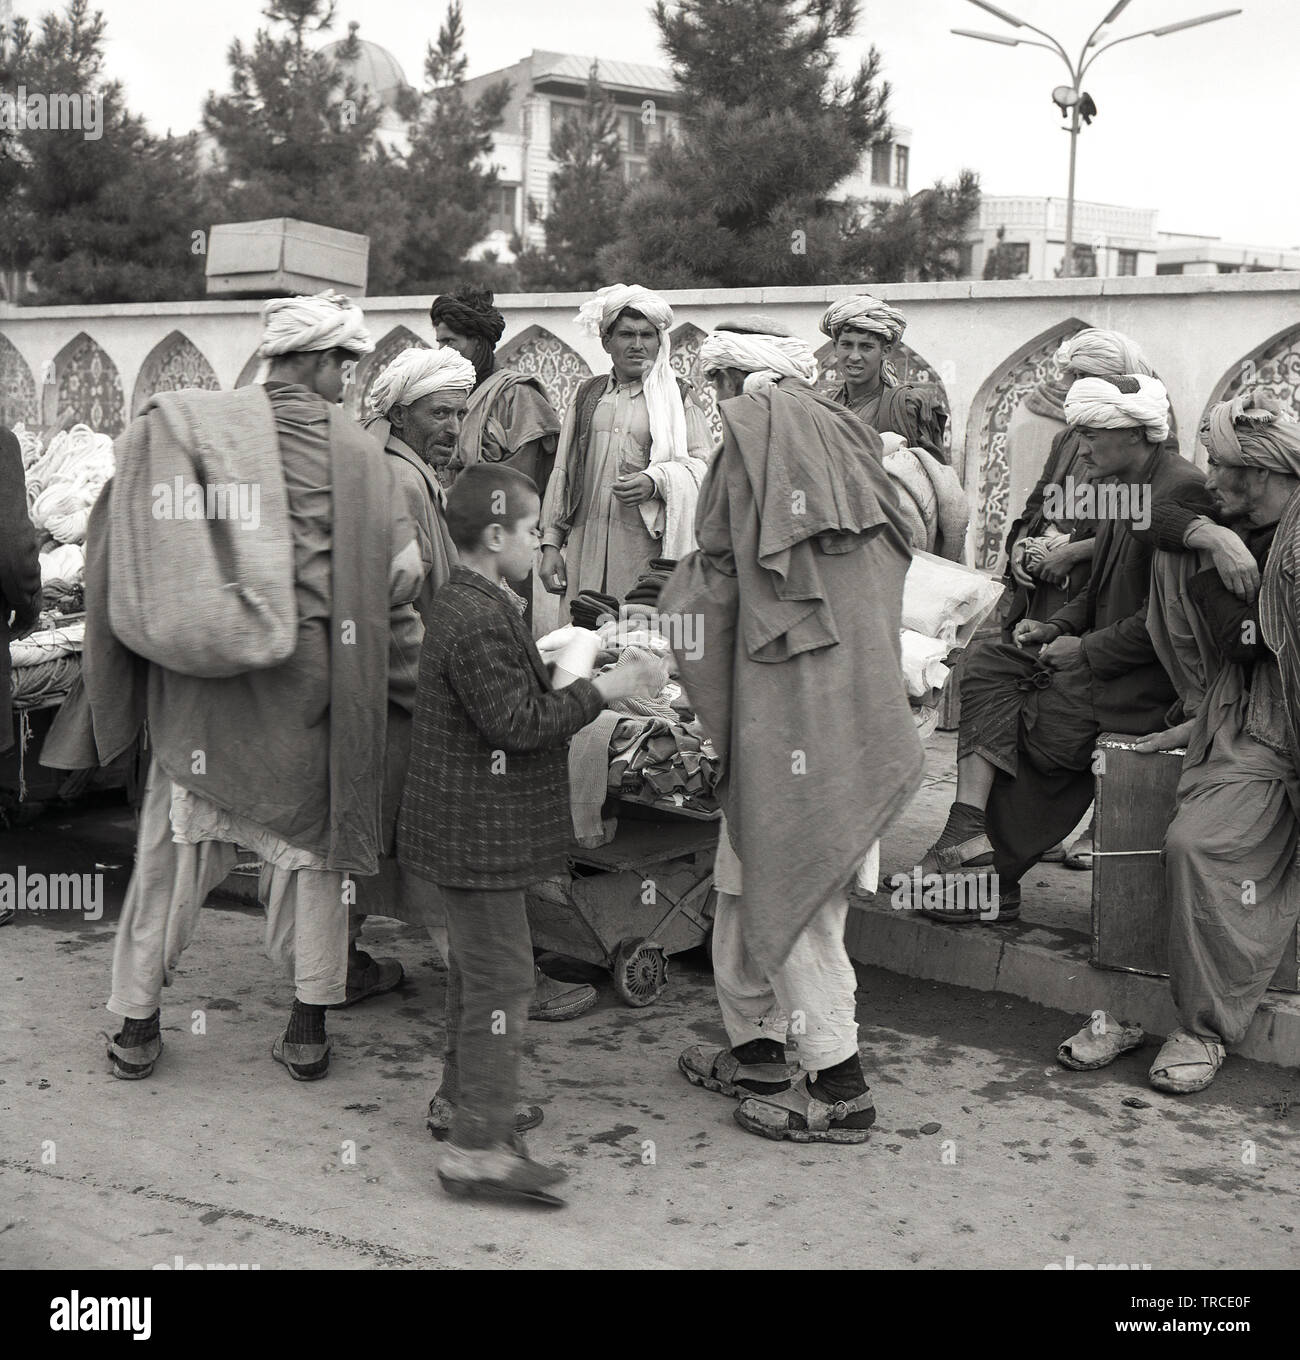 Années 1950, historiques, commerçants afghans portant des robes traditionnelles arabes et de casquettes, un Shemagh keffiyeh ou foulard ou afghan, se rassemblent à l'extérieur dans la rue en Afghanistan, Kabal. Banque D'Images